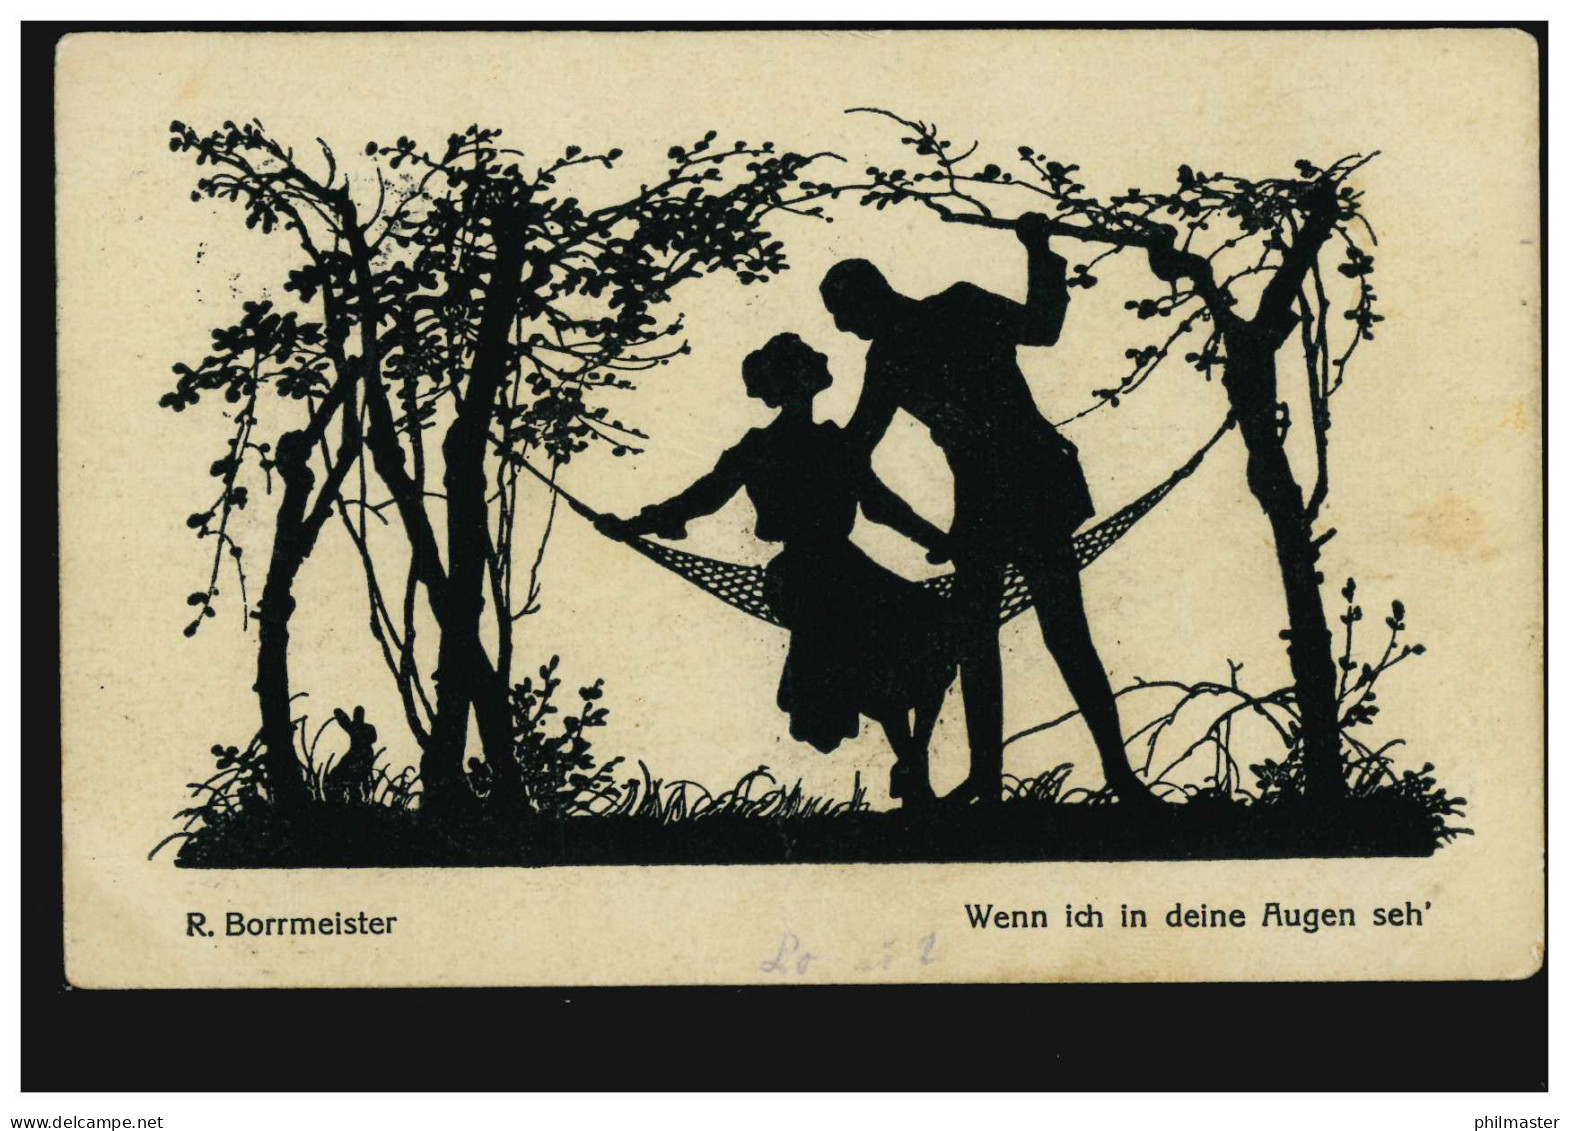 Scherenschnitt-AK R. Borrmeister Liebespaar - Wenn Ich In Deine Augen Seh', 1920 - Silhouettes